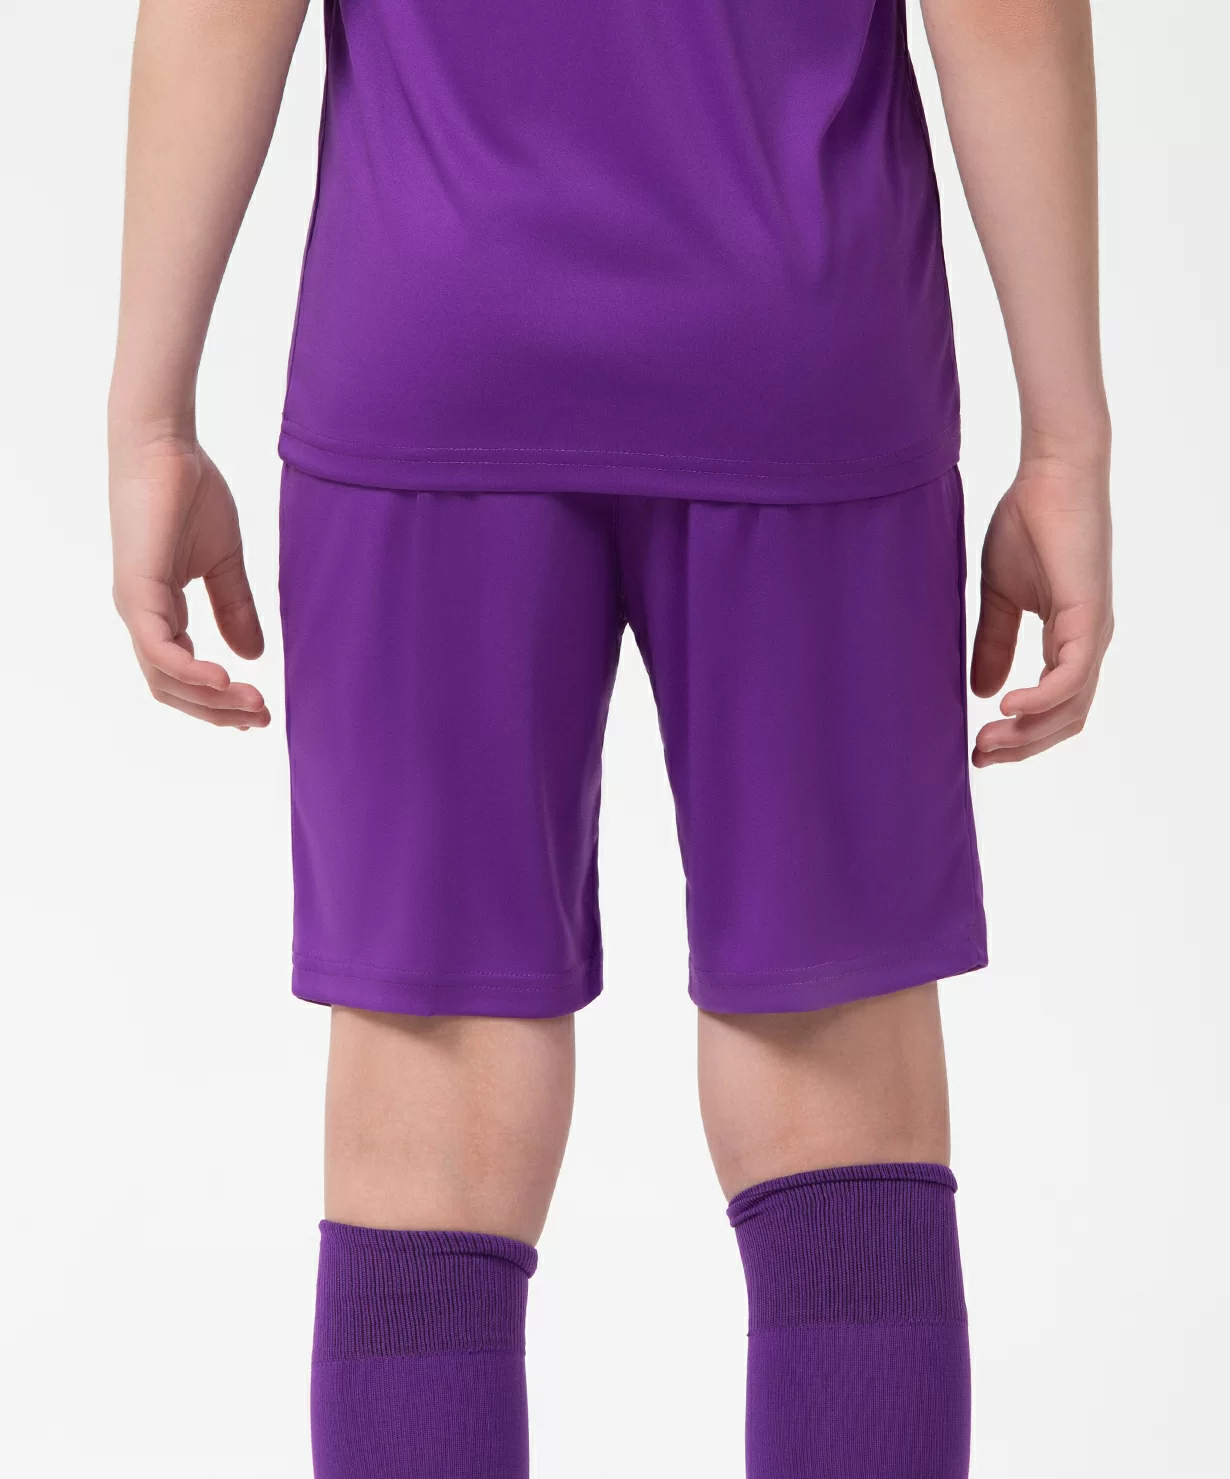 Реальное фото Шорты игровые CAMP Classic Shorts, фиолетовый/белый, детский Jögel от магазина Спортев